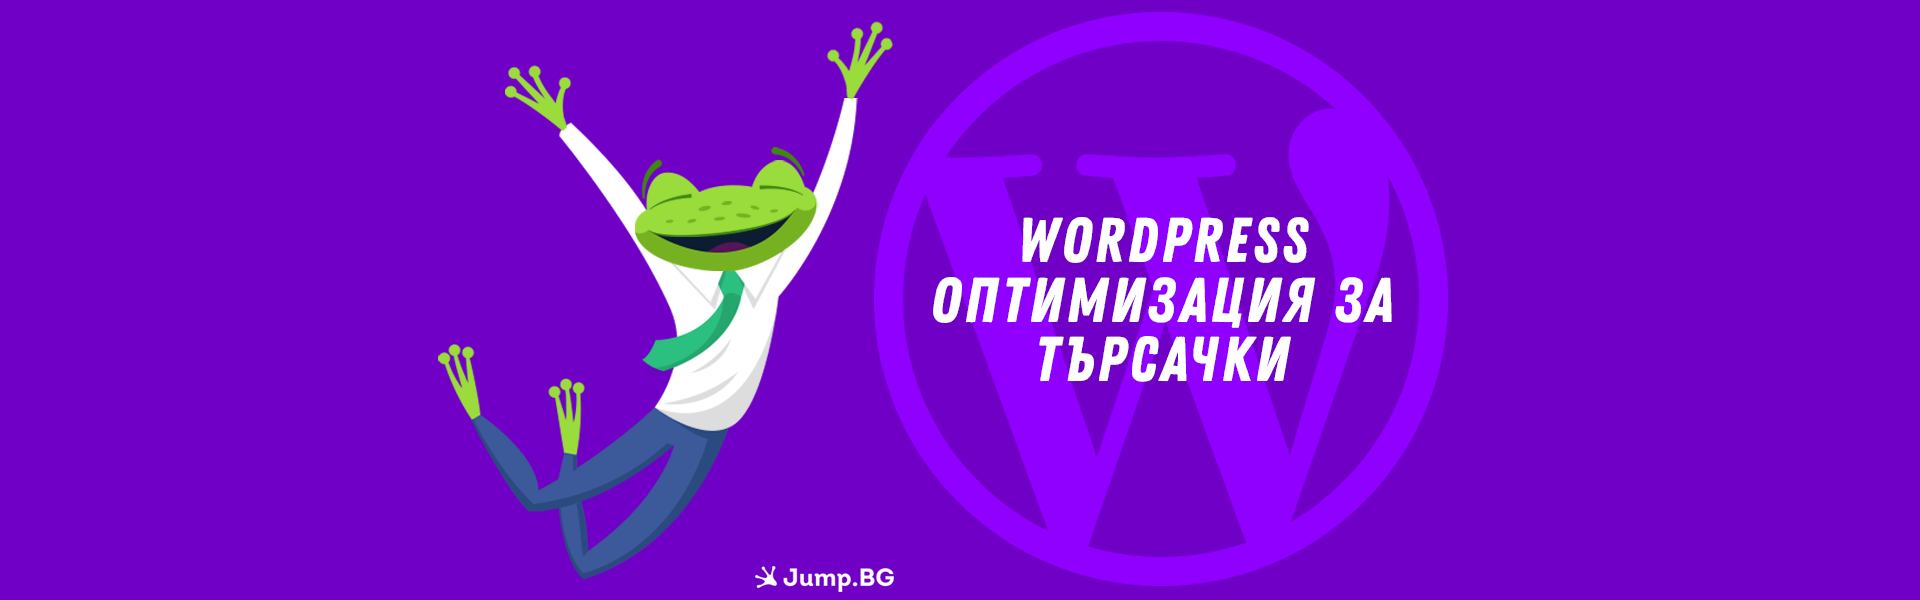 WordPress - Оптимизация за търсачки (SEO)